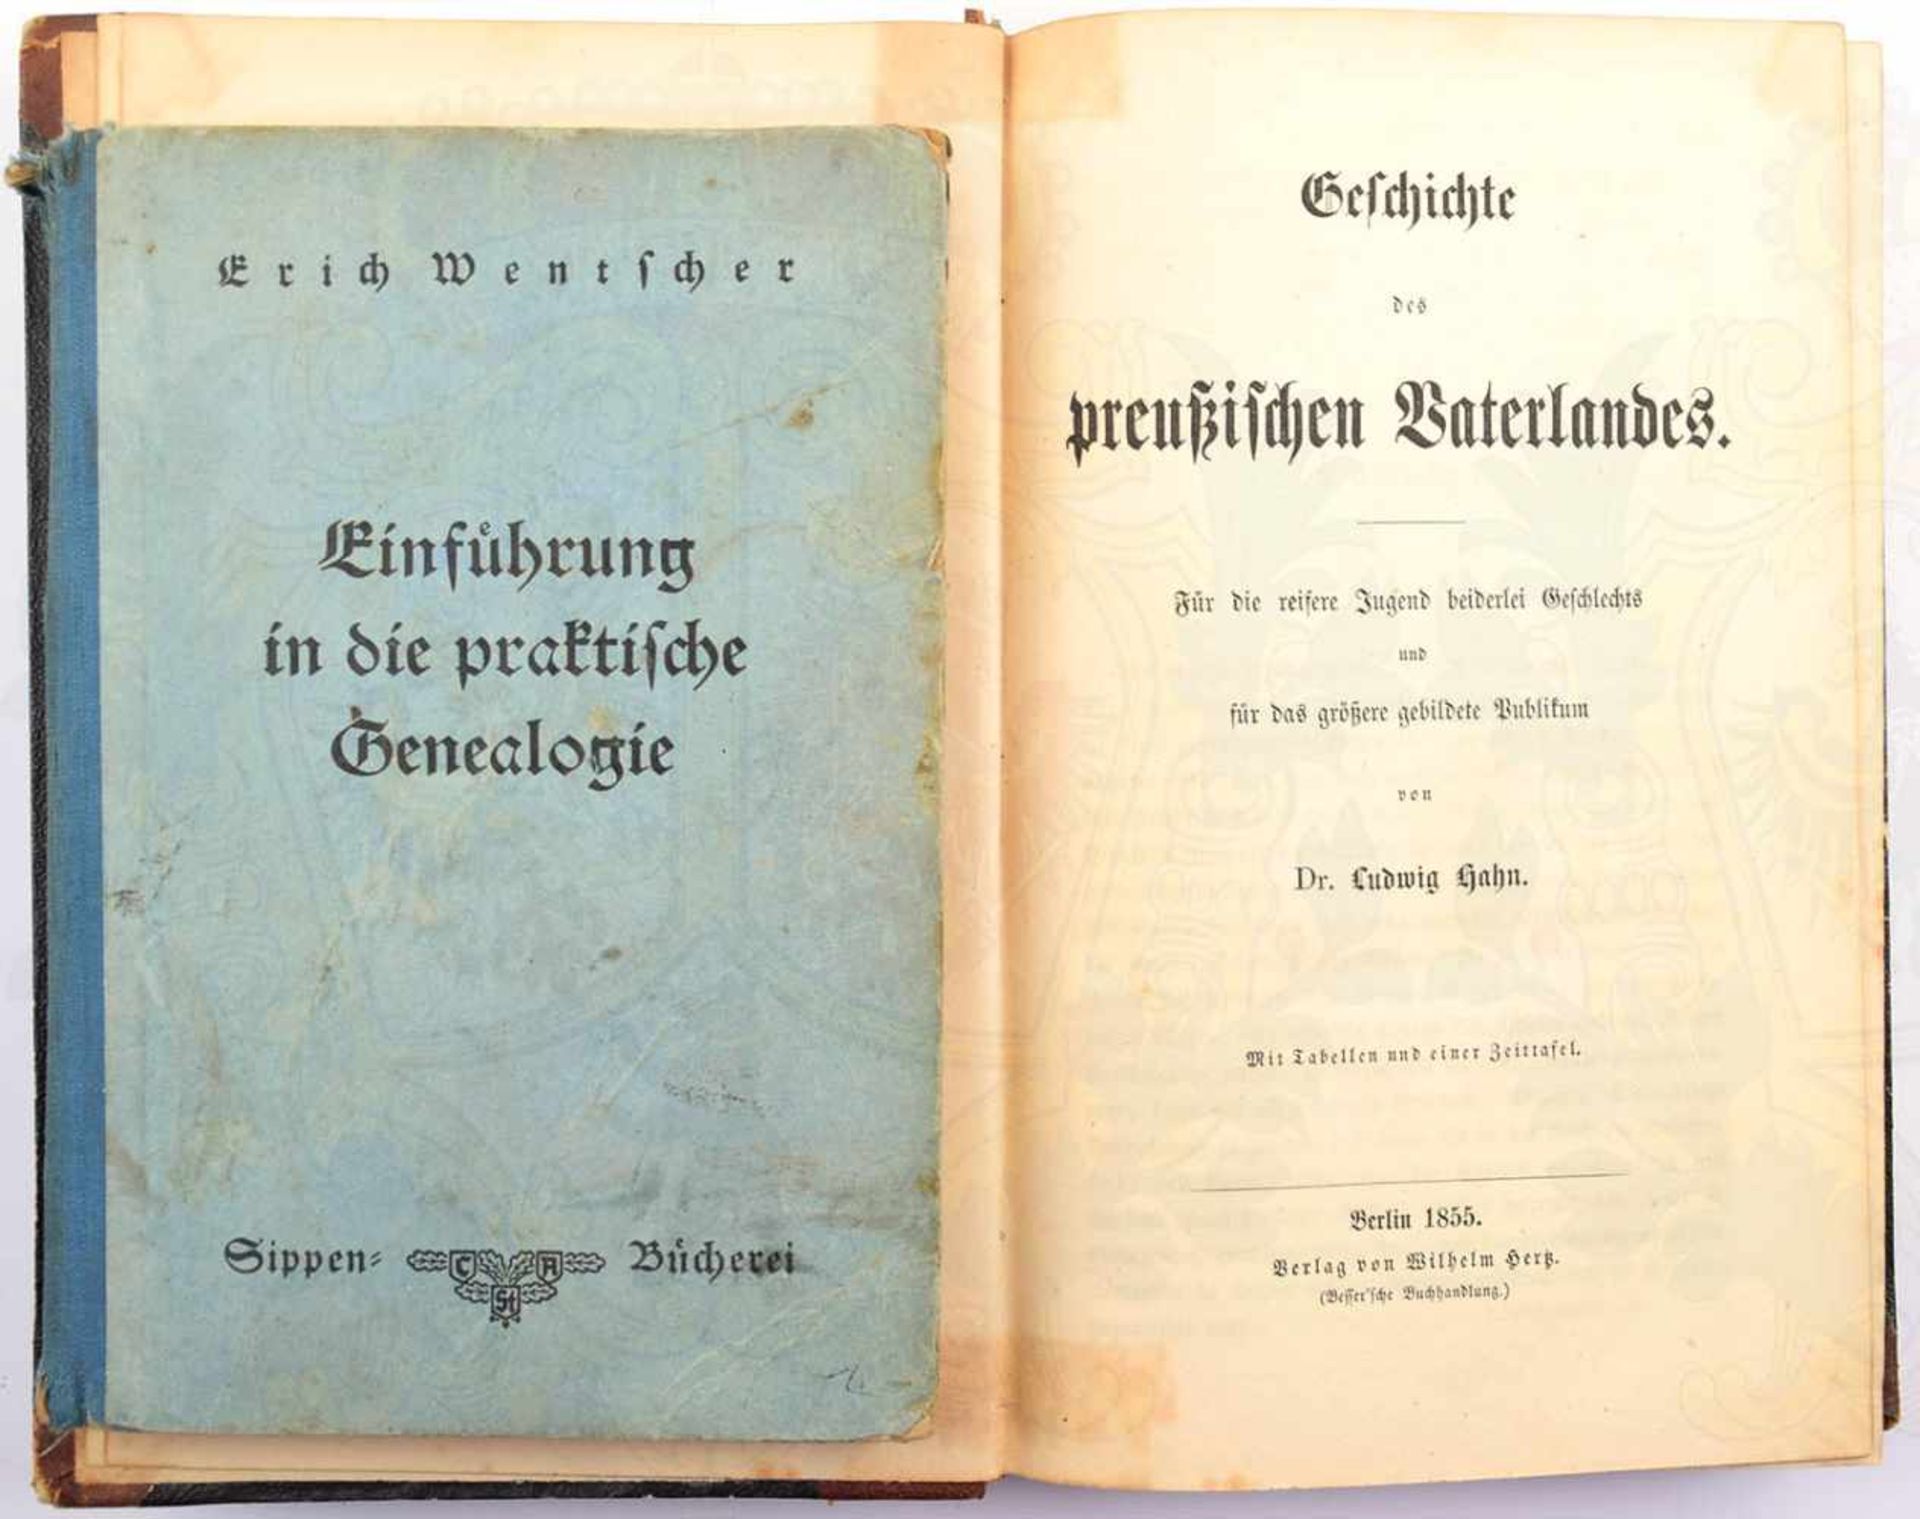 2 TITEL, Geschichte des preußischen Vaterlandes, Dr. L. Hahn, Bln. 1855, 632 S., Hld. m.